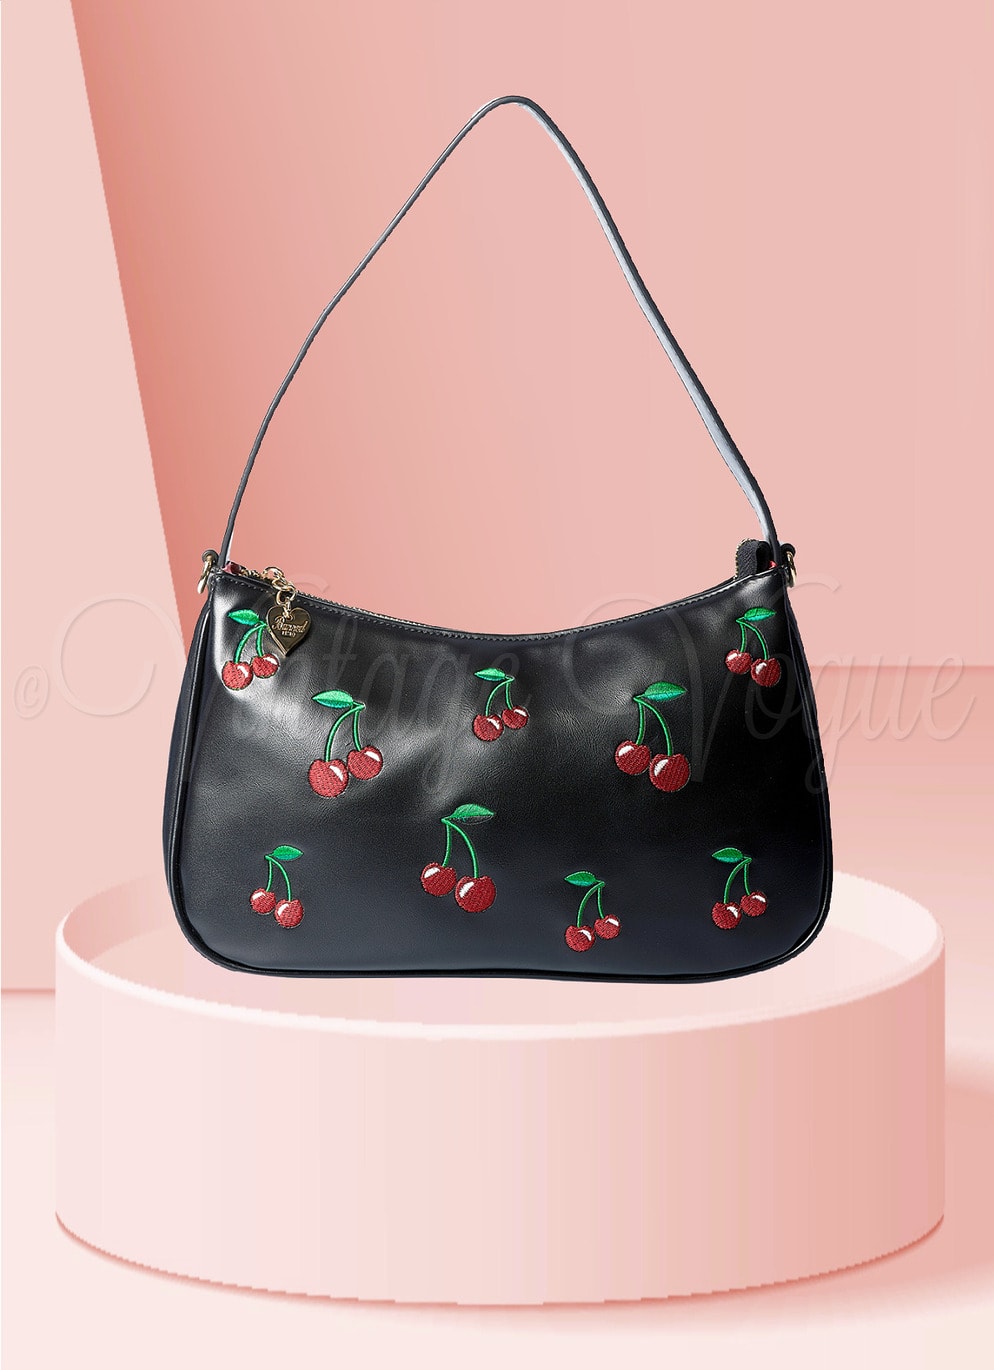 Banned Retro Kirschen Handtasche Wild Cherry Bag in Schwarz